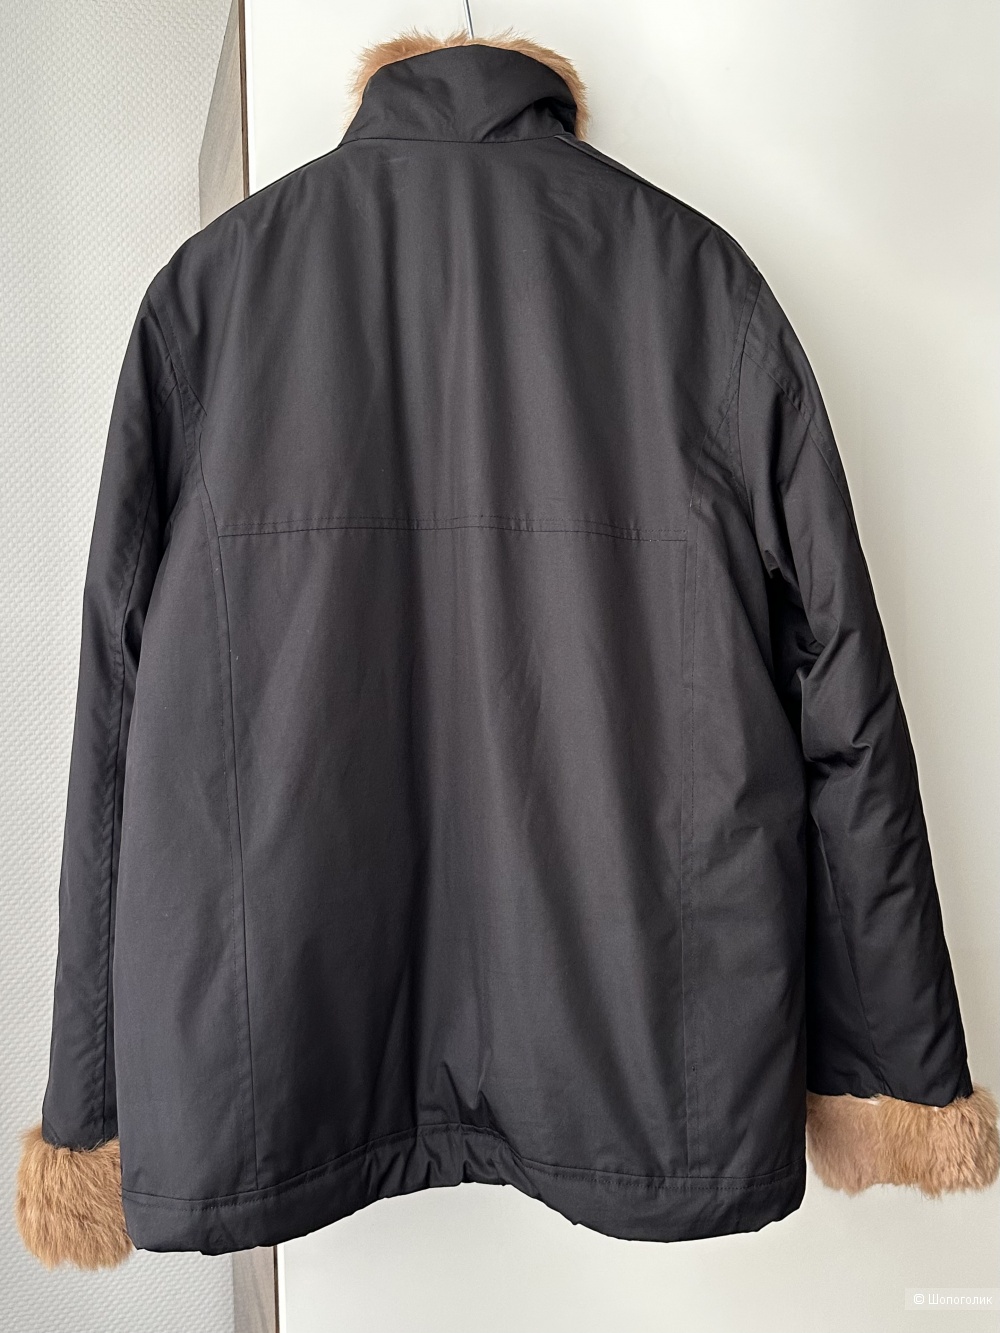 Куртка Haky Paky размер S-M